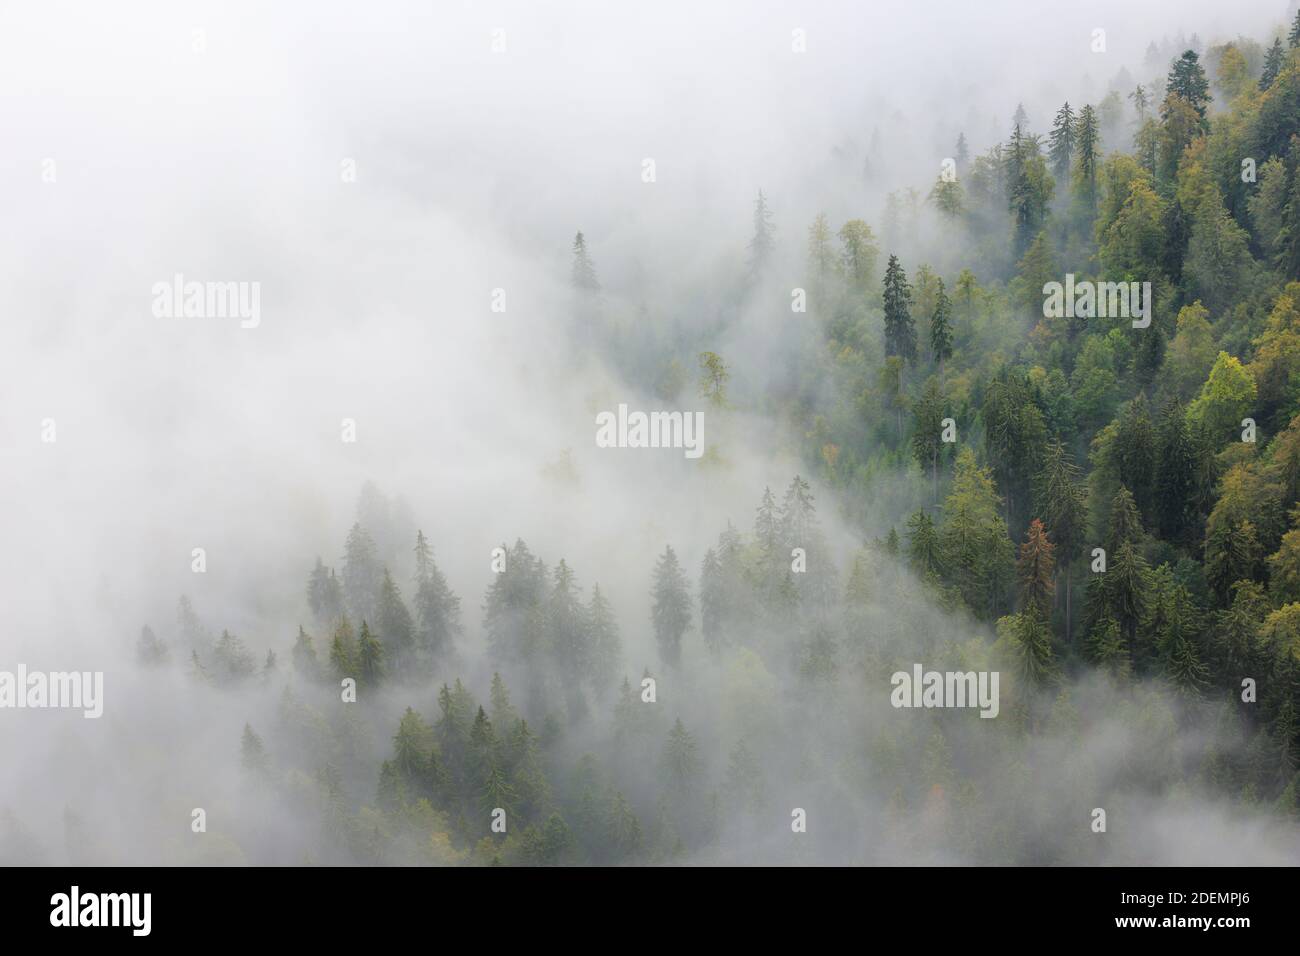 Geografia / viaggio, Svizzera, foresta di abete rosso nella nebbia, Neuenburg, diritti-aggiuntivi-clearance-Info-non-disponibile Foto Stock